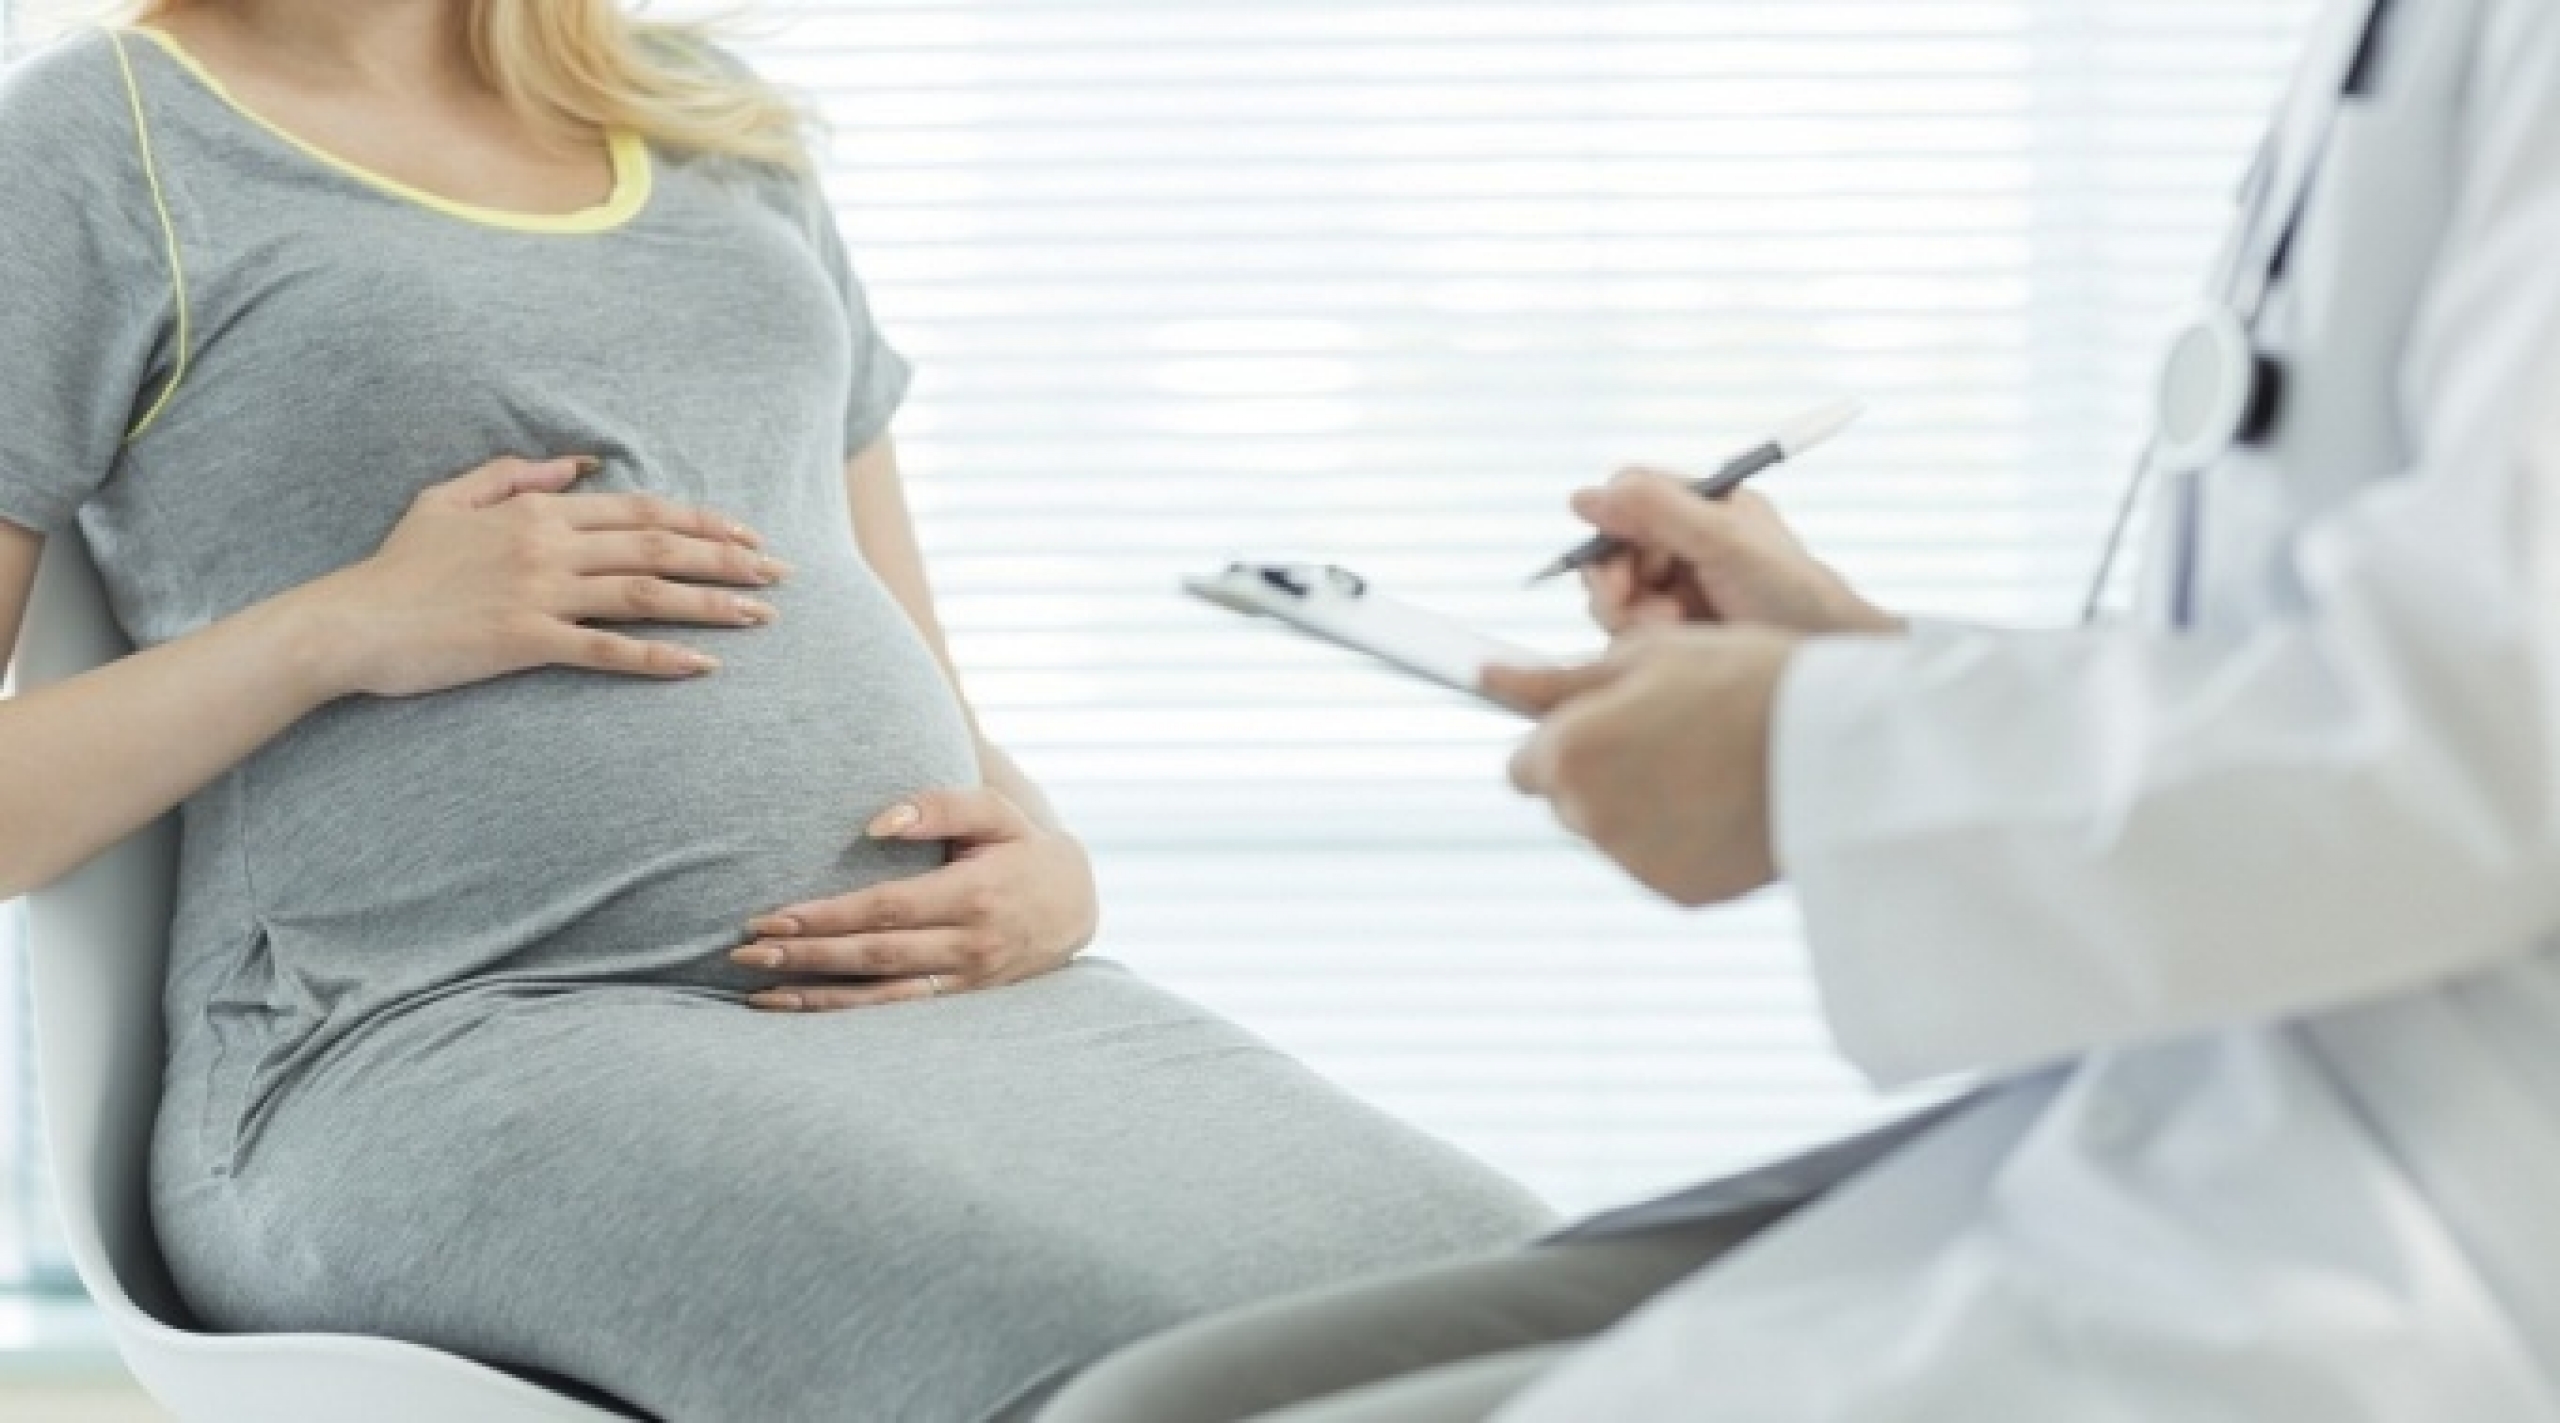 Какие периоды беременности самые опасные и чем?